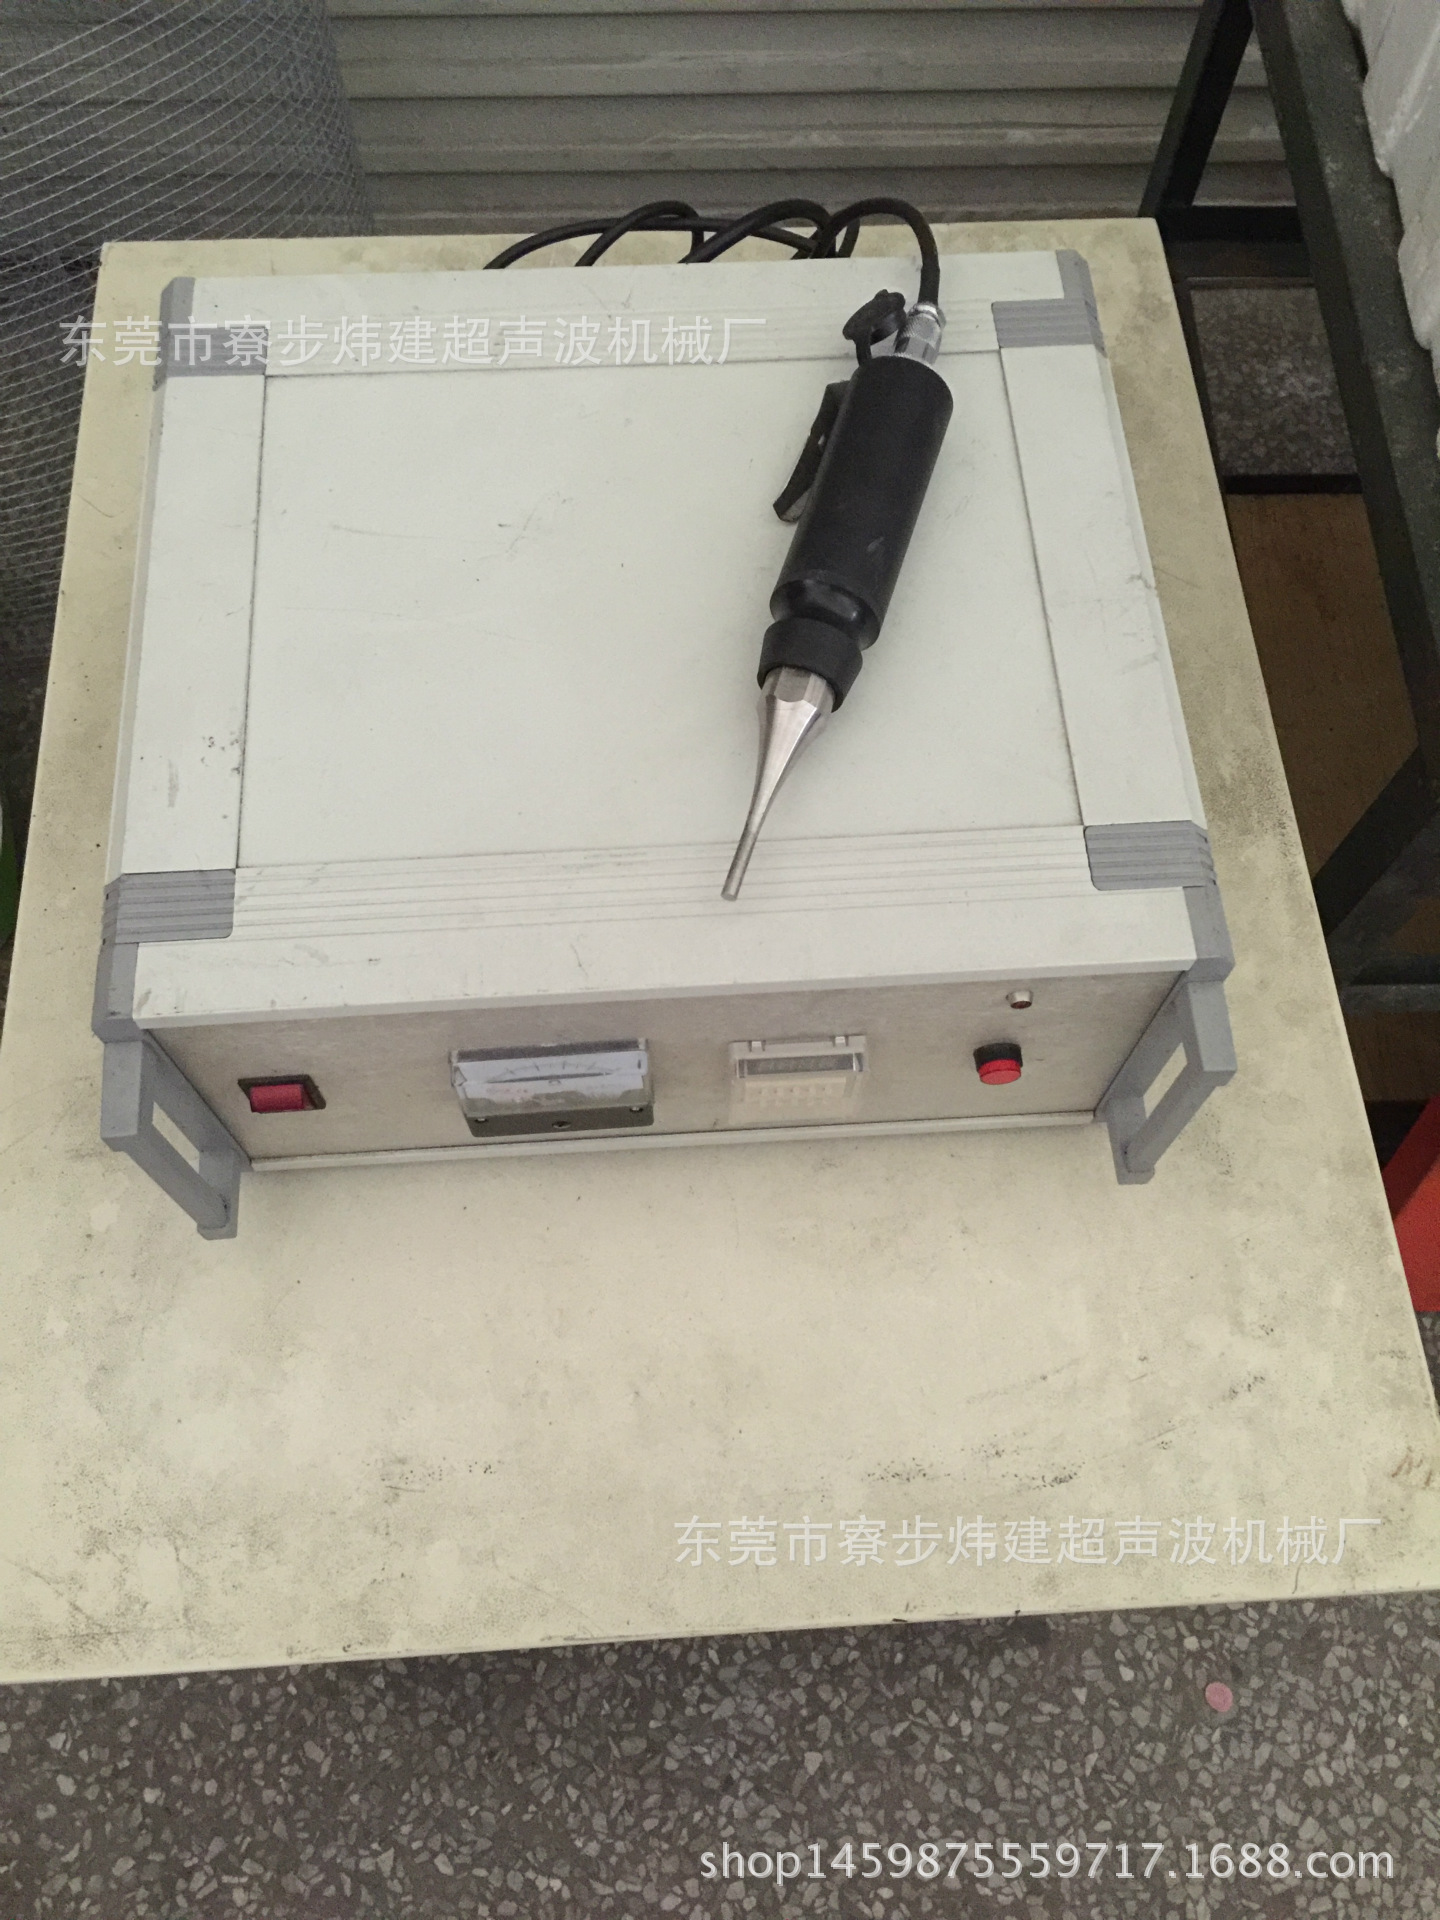 东莞炜建超音波熔接机械厂产销湖南超声波焊接设备、模具加工示例图11